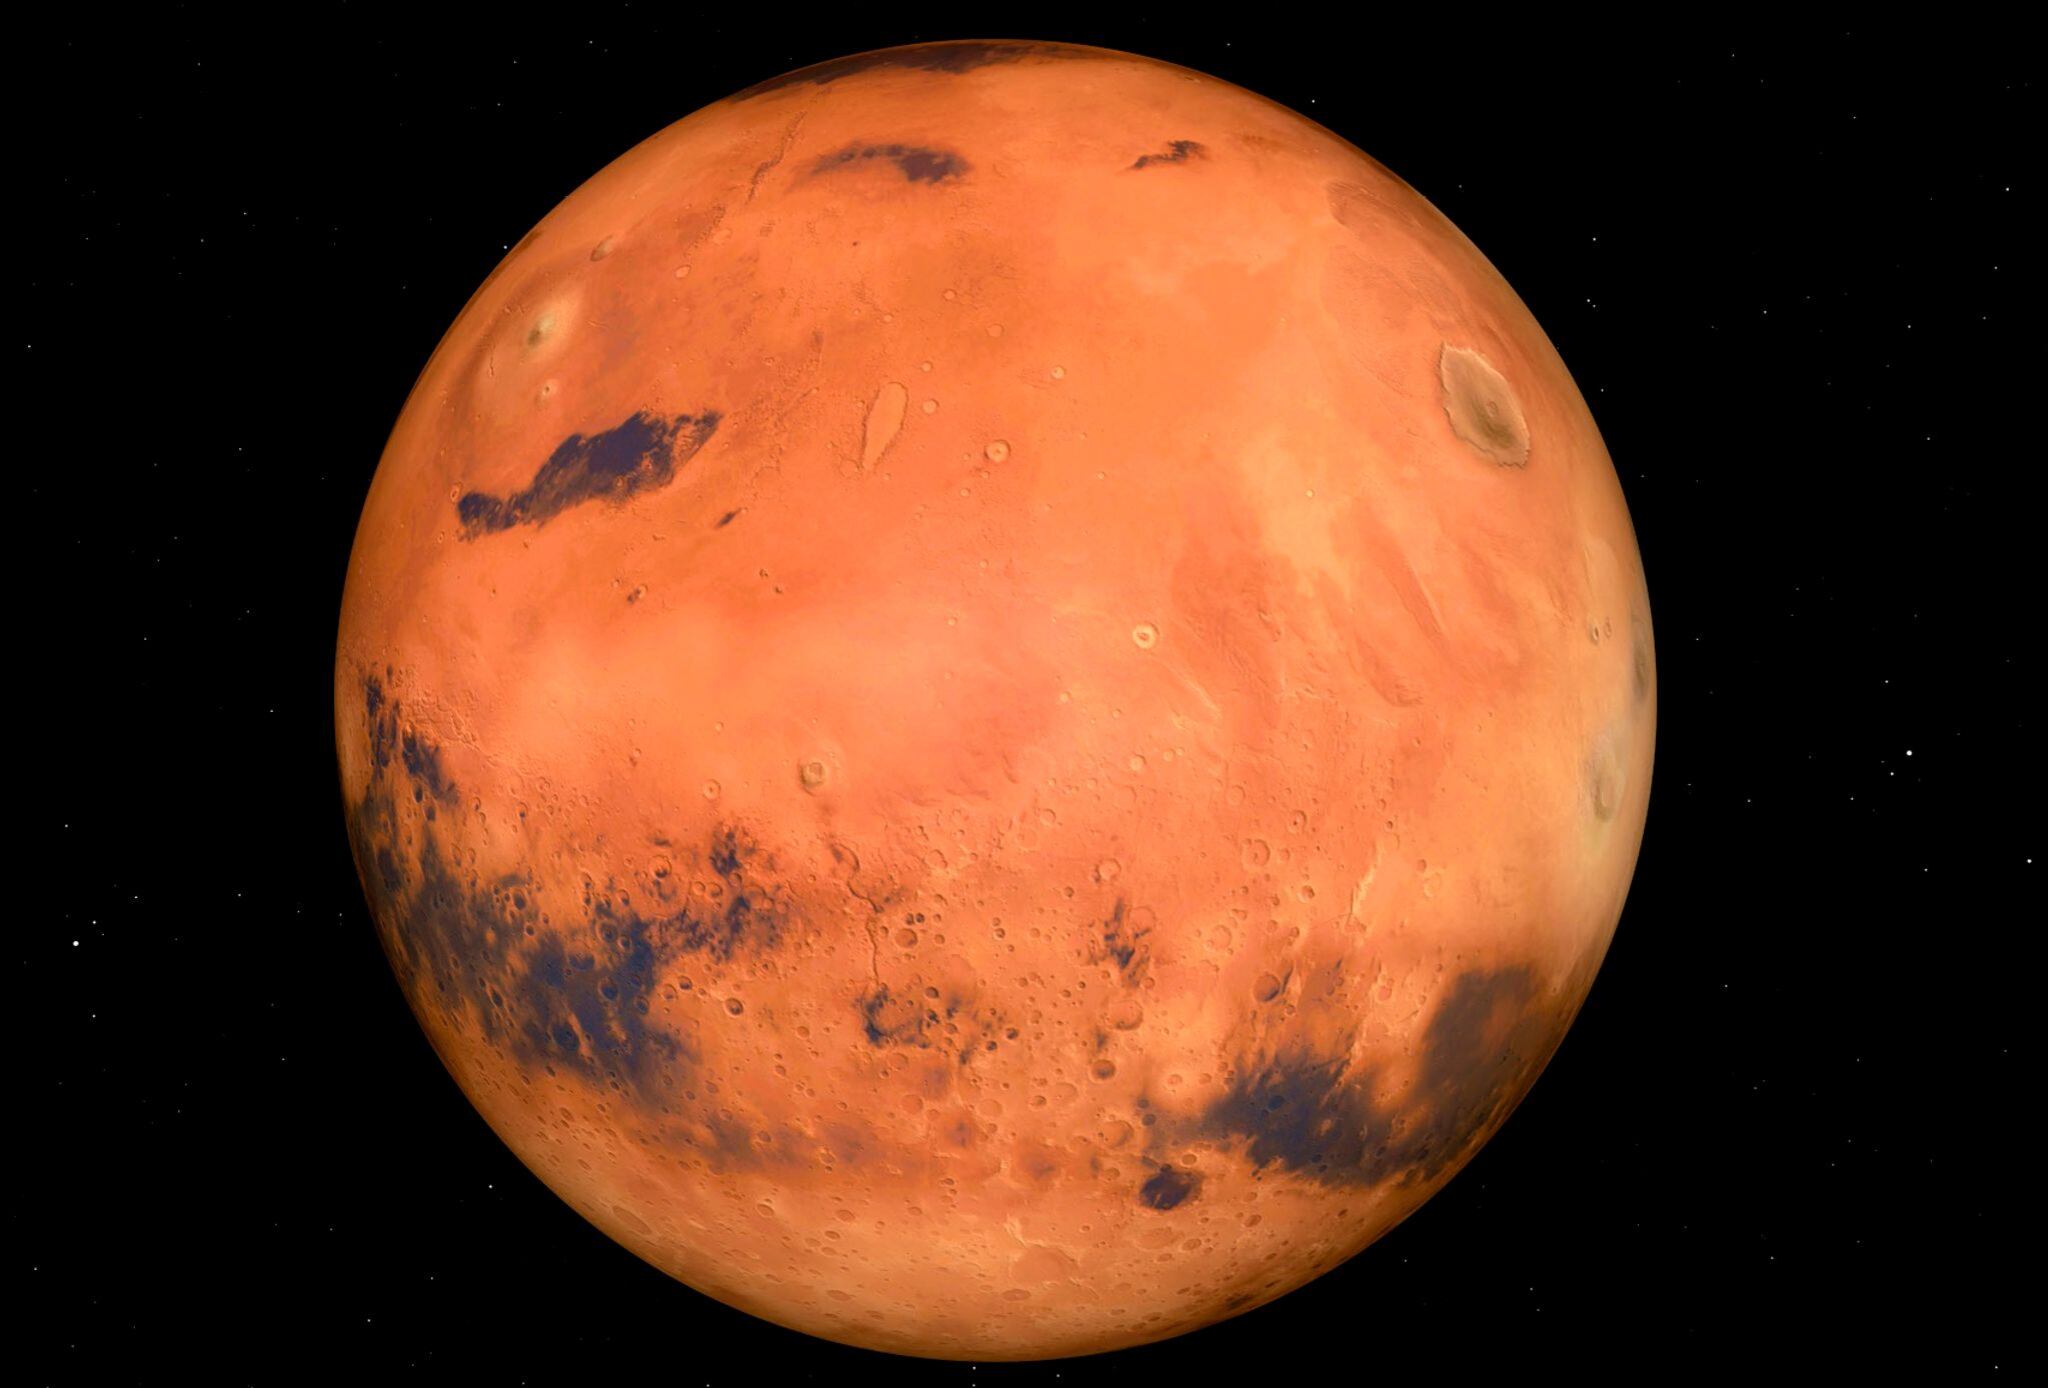 La NASA a enviado sondas, robots y satélites a lo largo de los años para estudiar la superficie, la composición y la atmósfera marciana, pero el máximo hito será la llegada del hombre en un futuro